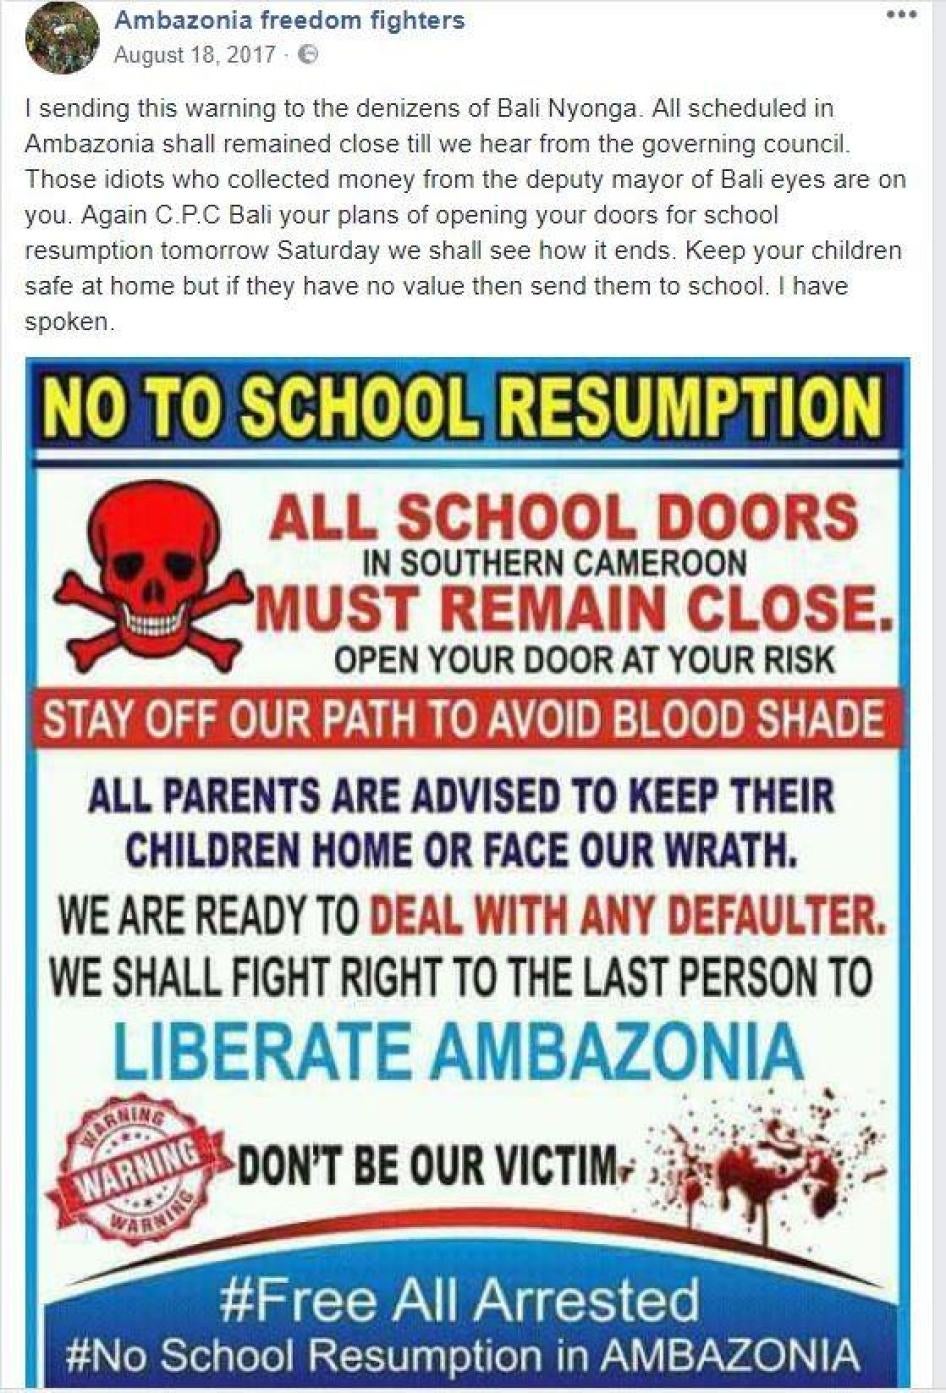 Un avertissement menaçant les parents d’élèves pour qu’ils boycottent les écoles, diffusé sur Facebook par « Ambazonia Freedom Fighters », un groupe séparatiste dans une région anglophone du Cameroun autobaptisée « Ambazonia ». Août 2017.